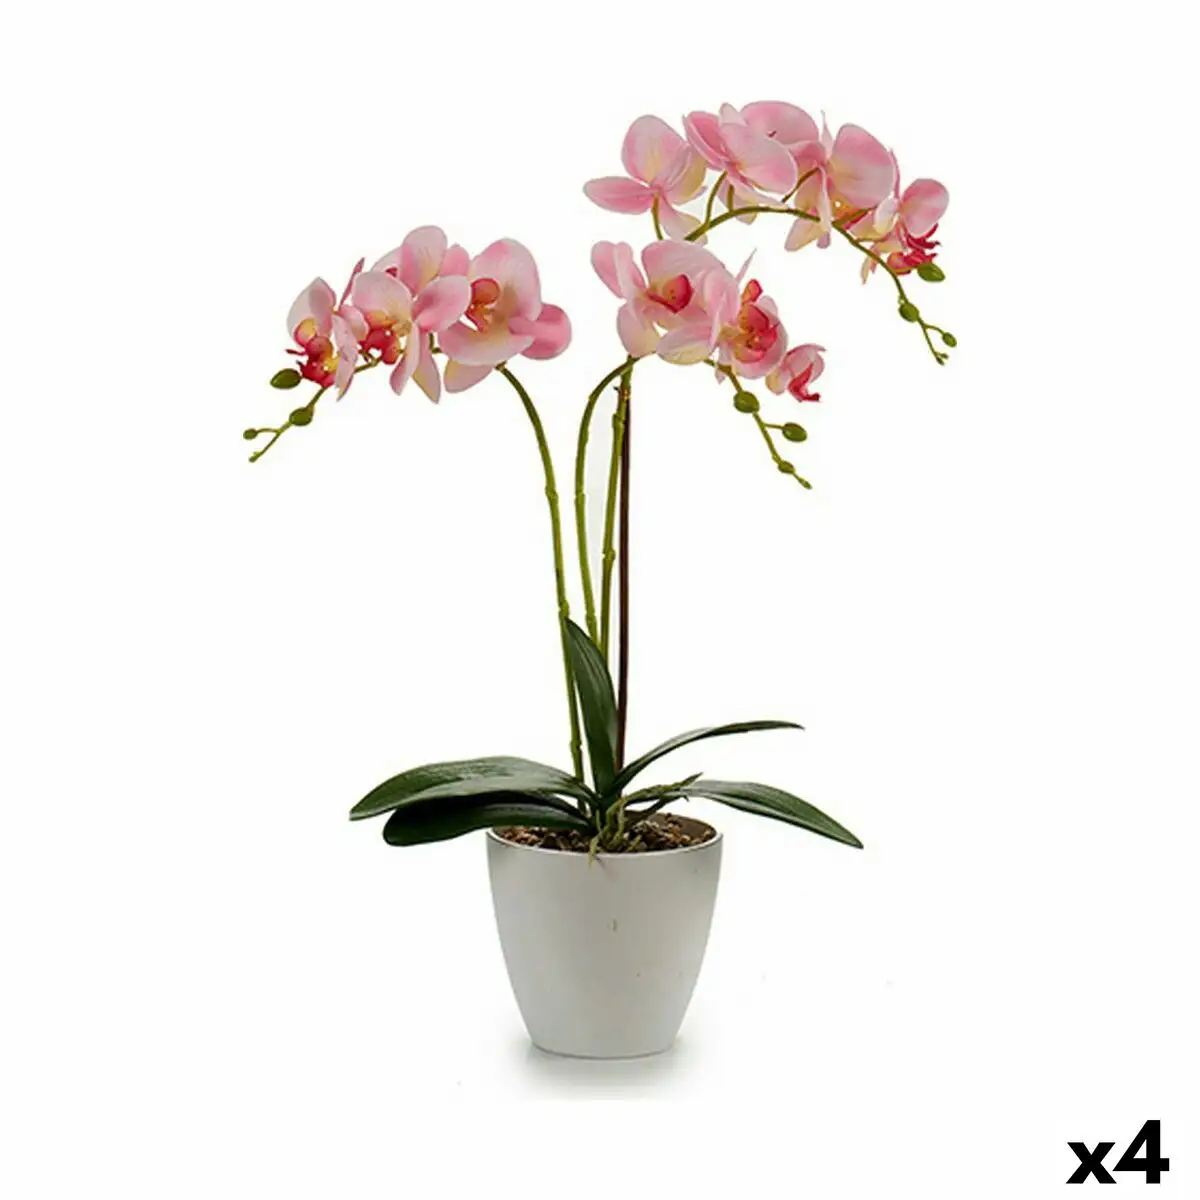 Plante decorative orchidee plastique 20 x 49 x 26 cm 4 unites _5102. Entrez dans le Monde de DIAYTAR SENEGAL - Où la Satisfaction est la Priorité. Explorez notre sélection pensée pour vous offrir une expérience de shopping qui va au-delà de vos attentes.